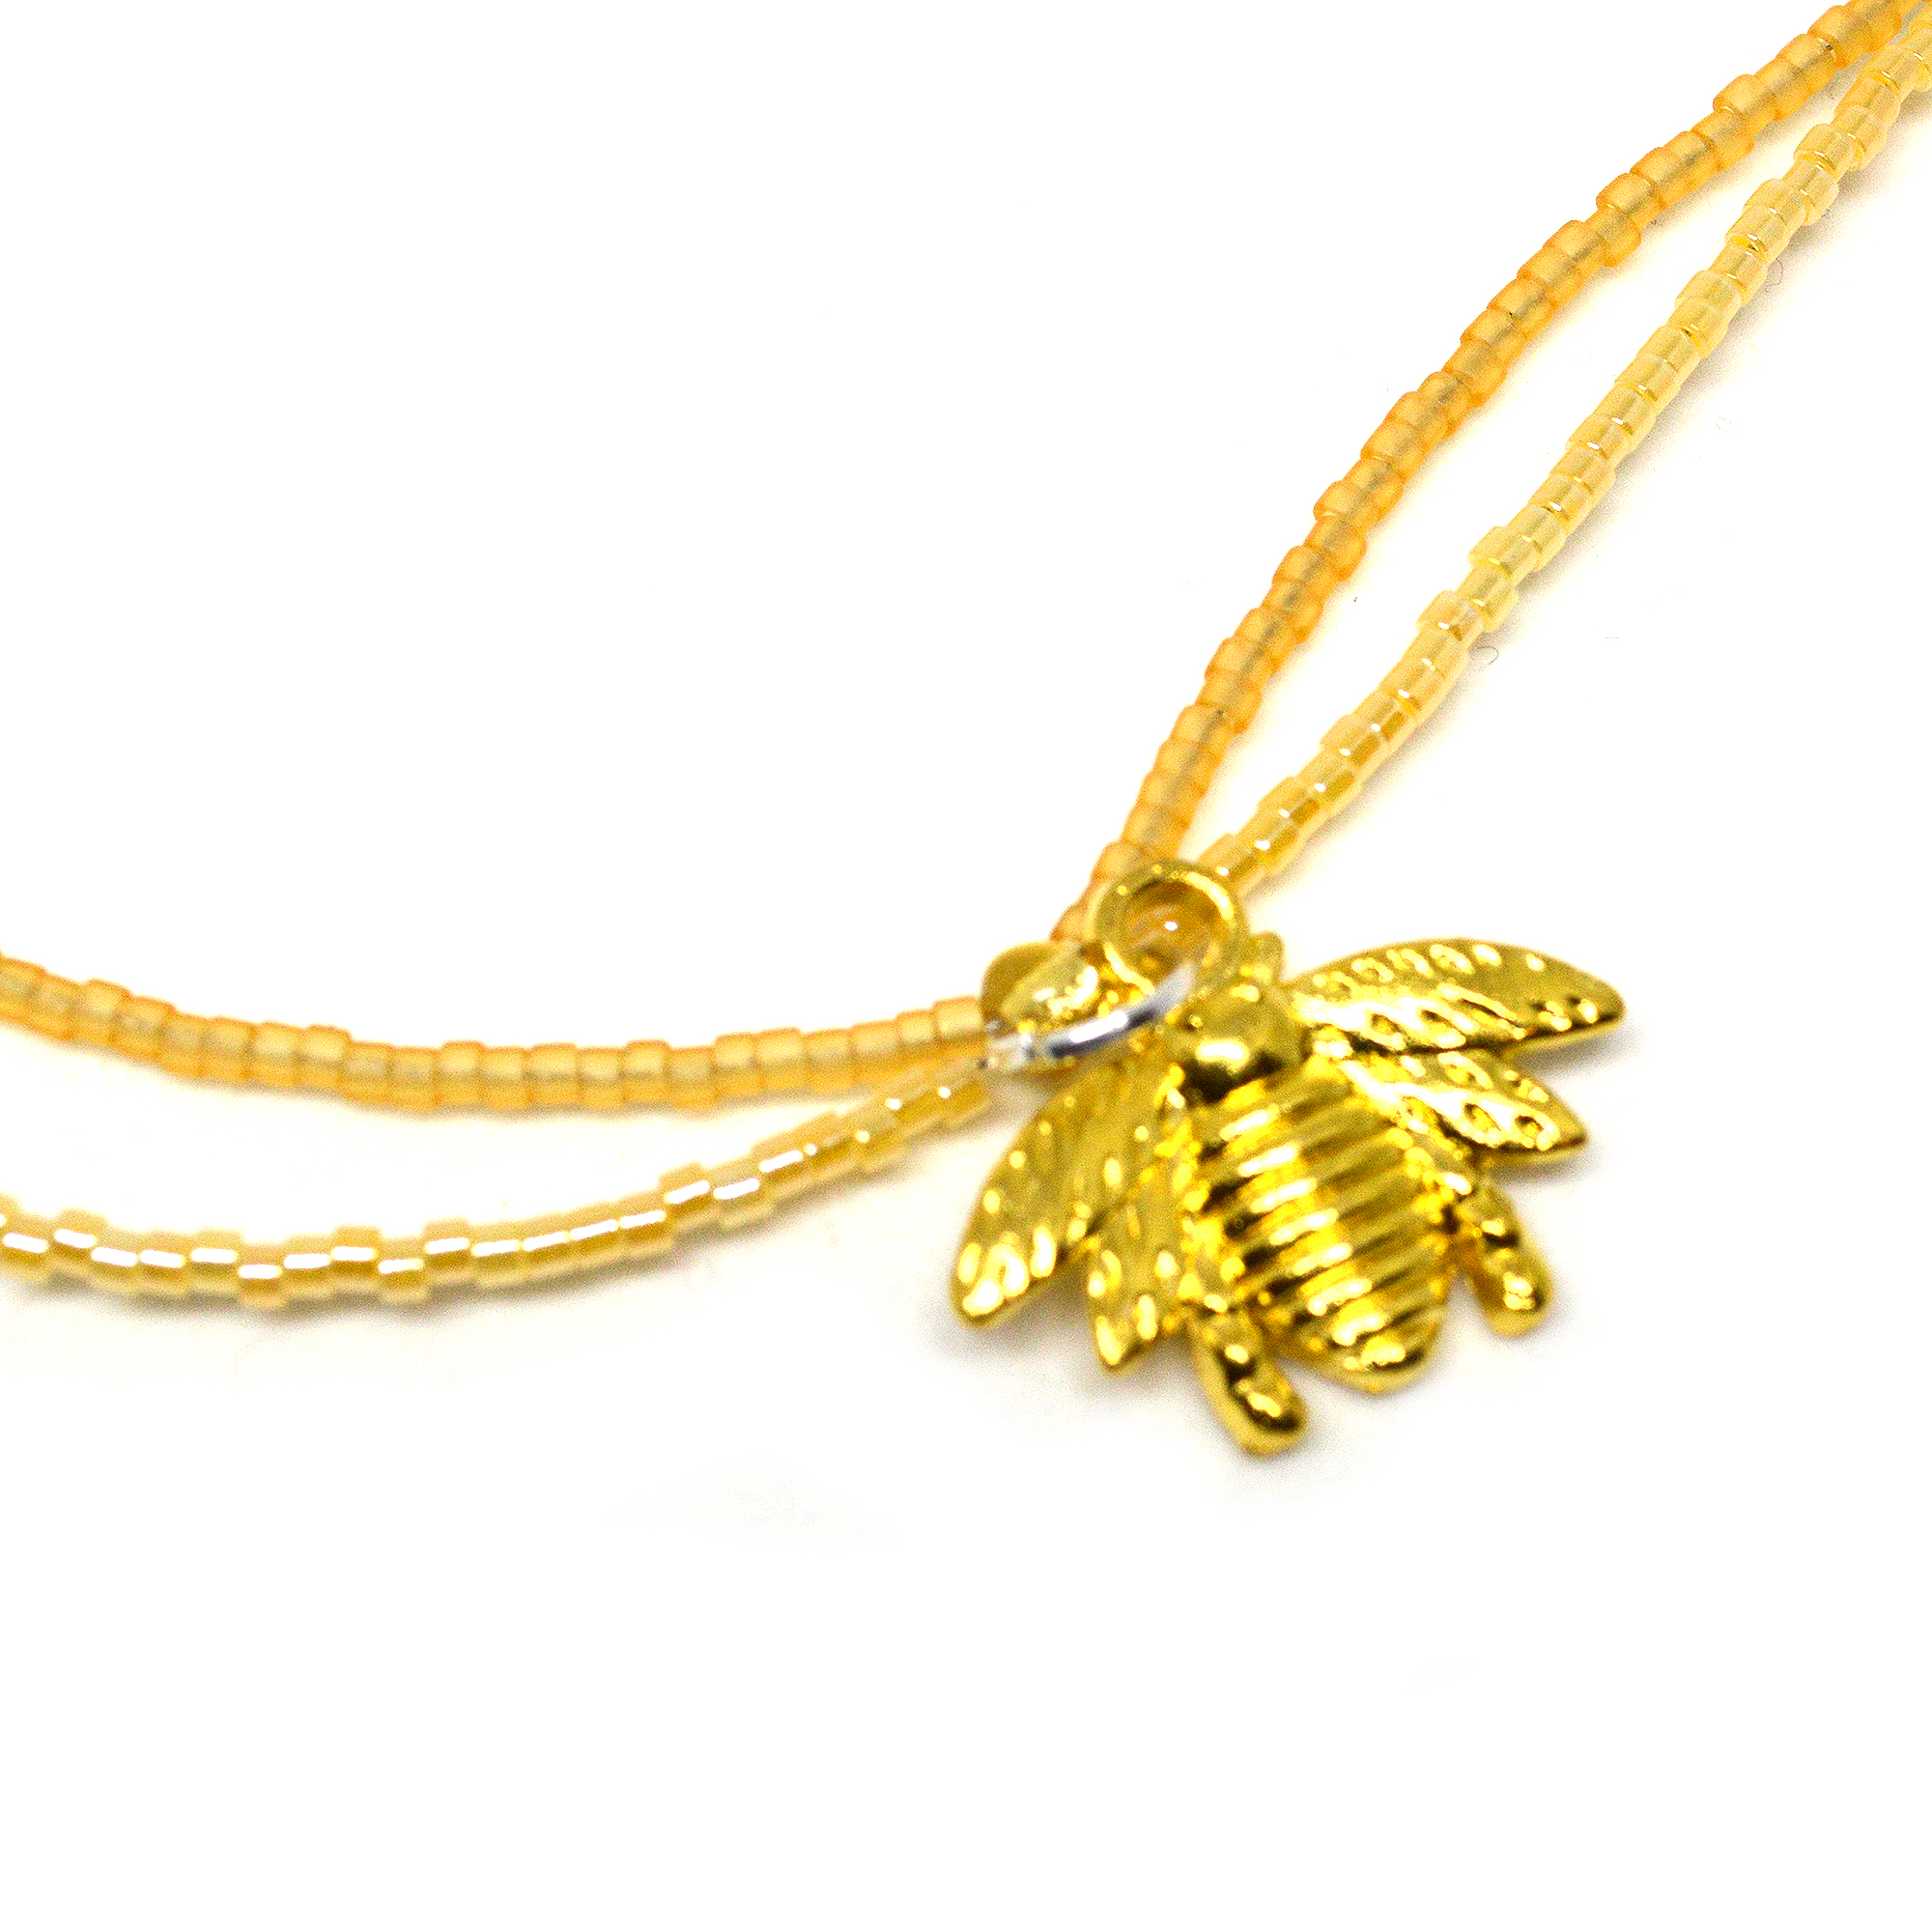 Ankle bracelet gold honey bee charm